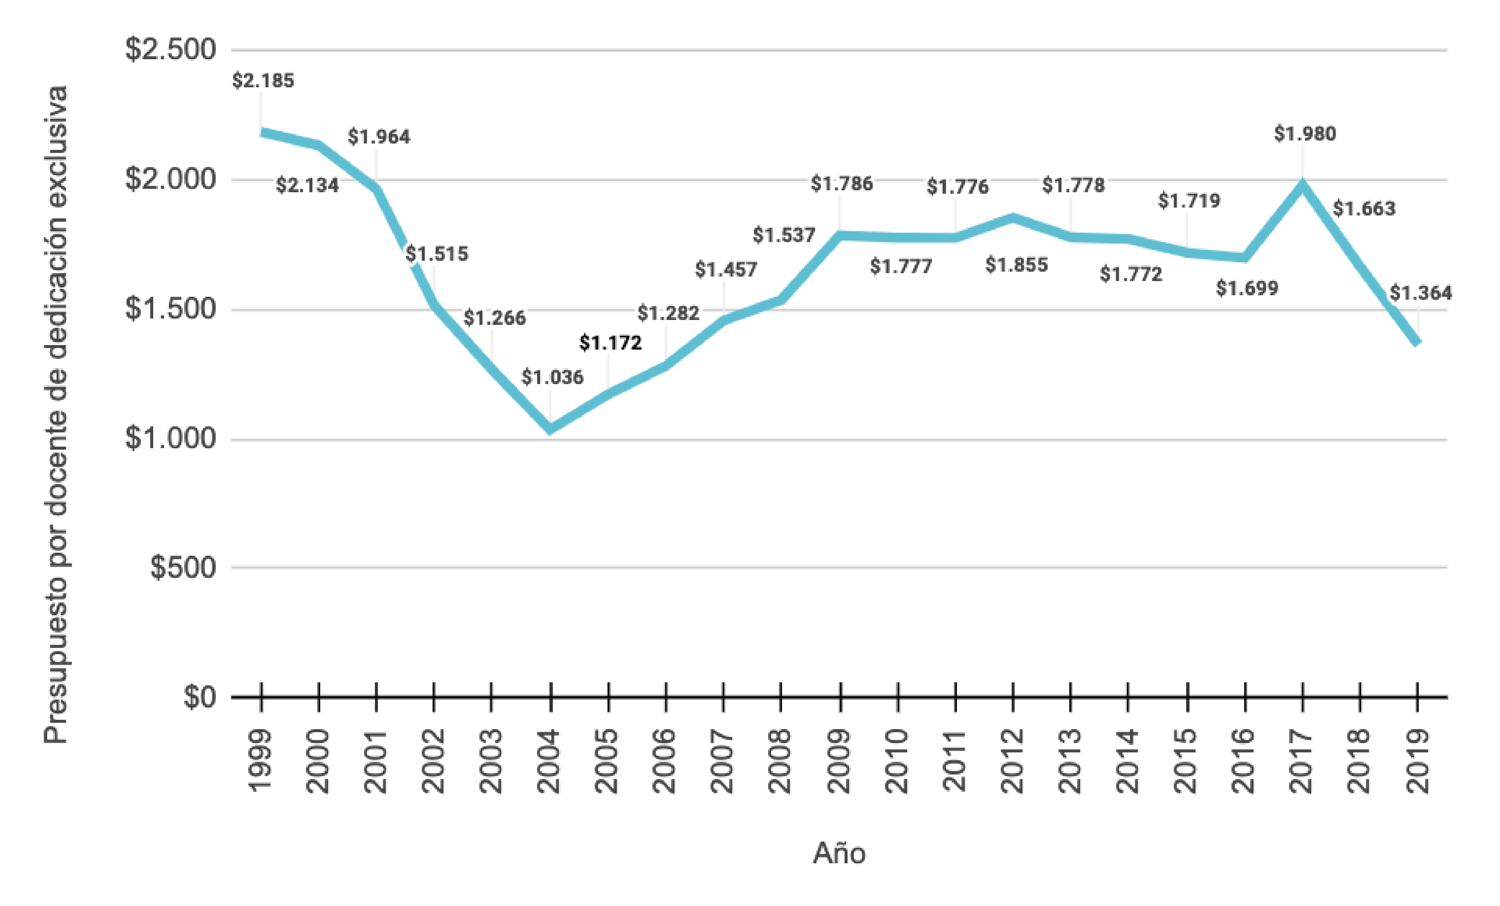 Presupuesto por Cargo Docente Equivalente de Dedicación Exclusiva (1999 a 2019) en ‘000 de pesos de 2019 